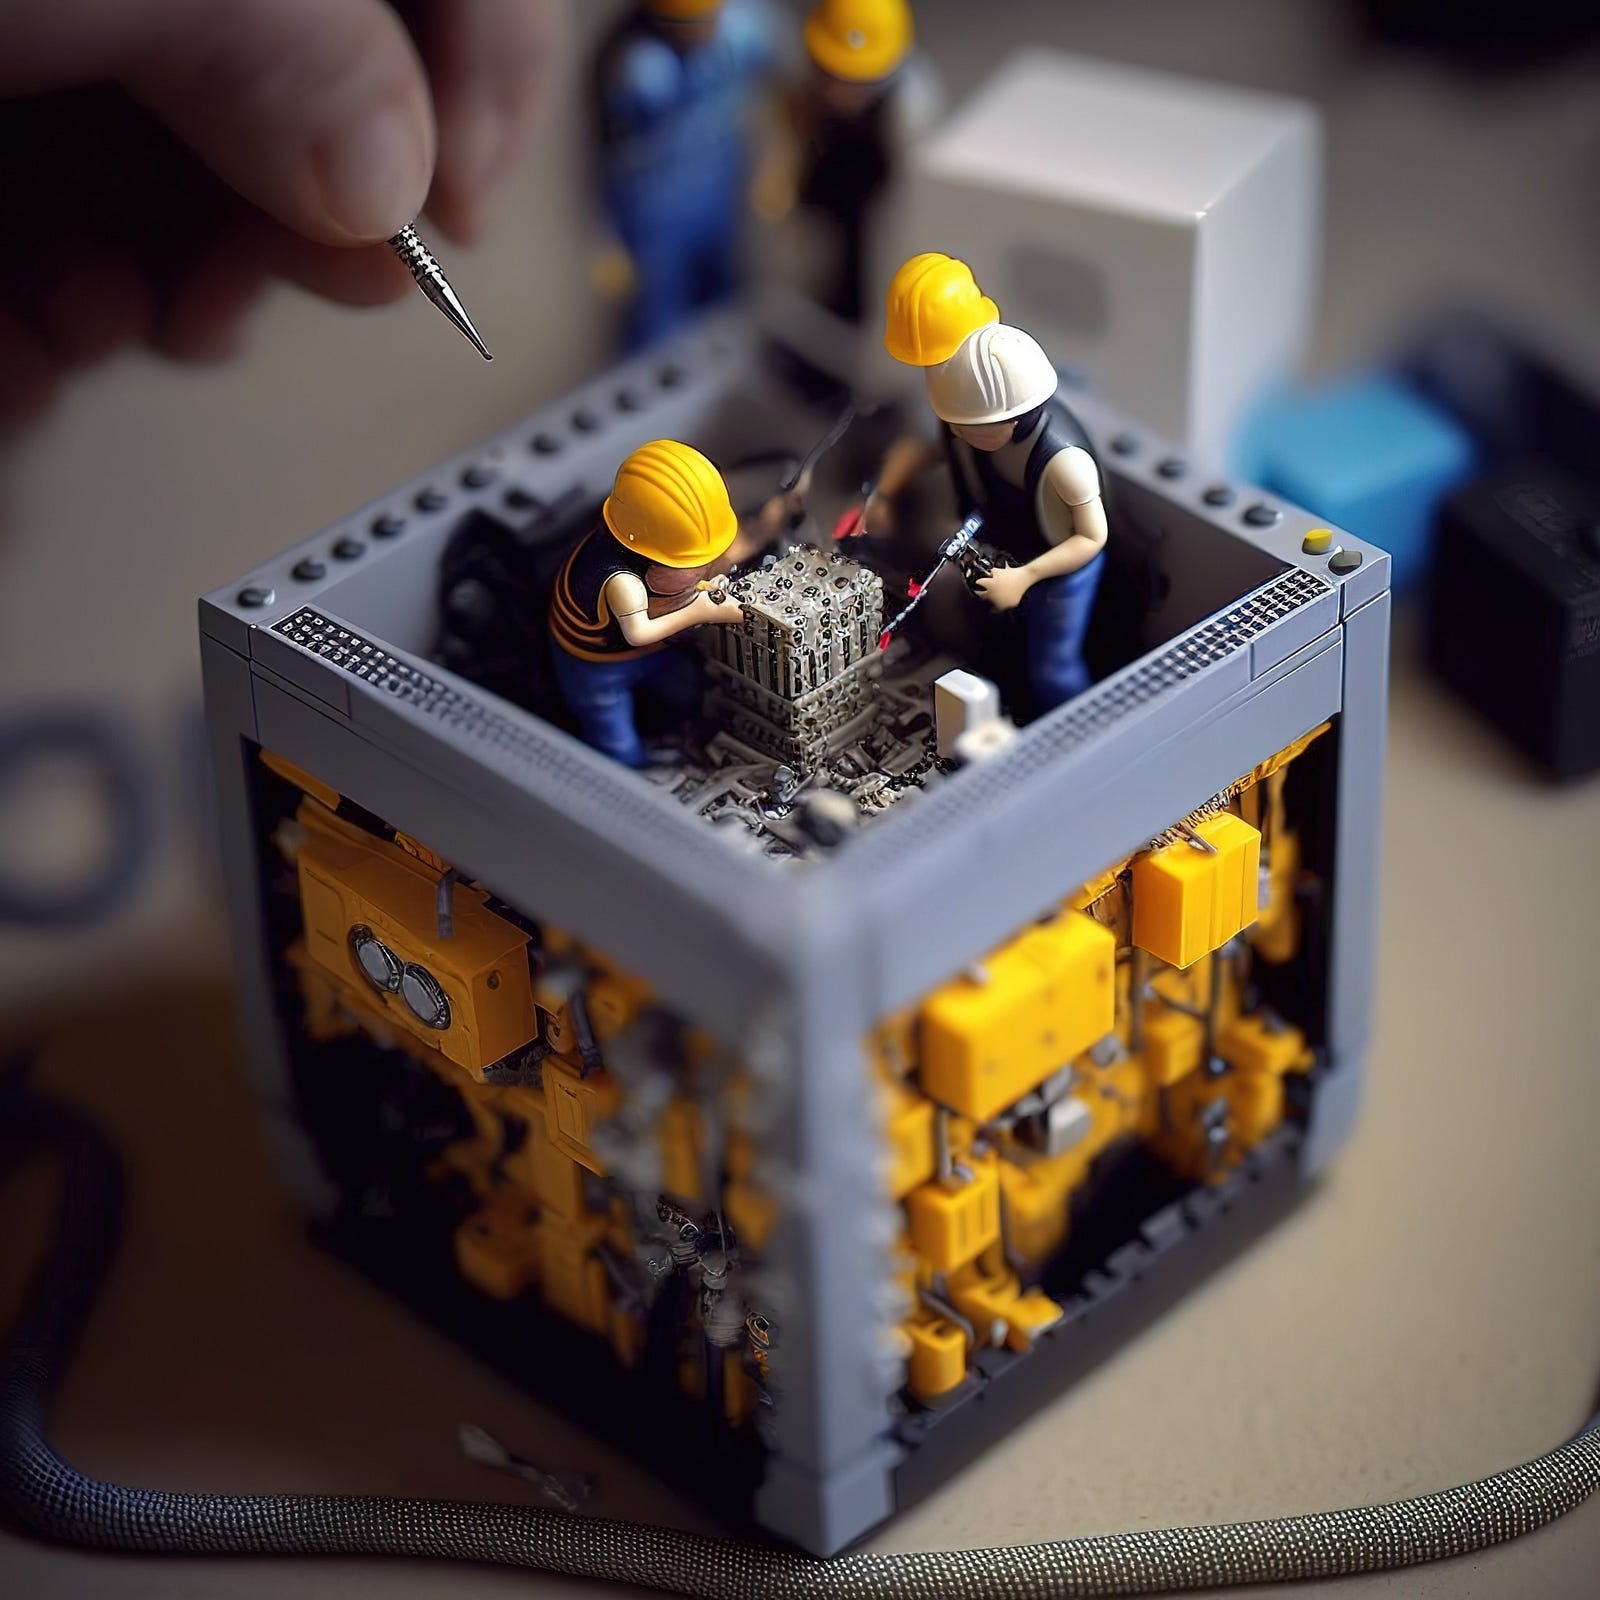 Immagine decorativa con omini stile Lego che collaborano alla saldatura di parti meccaniche